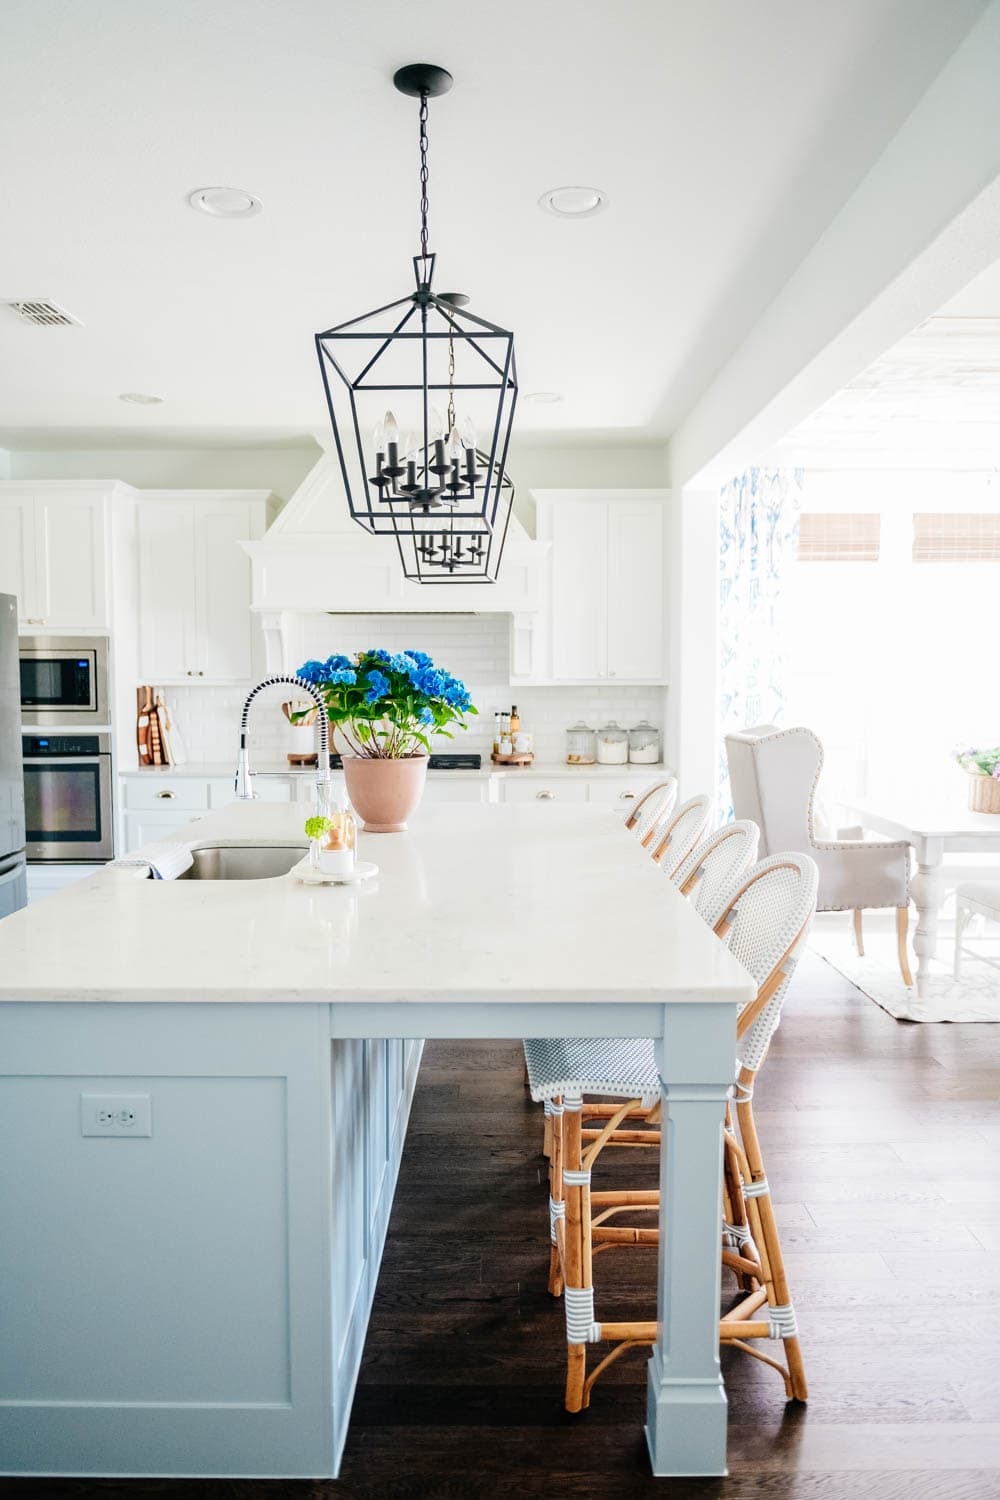 Summer kitchen decor, blue hydrangeas, potted plants, white kitchen, kitchen decor, kitchen decor ideas. #ABlissfulNest #whitekitchen #kitchendecor